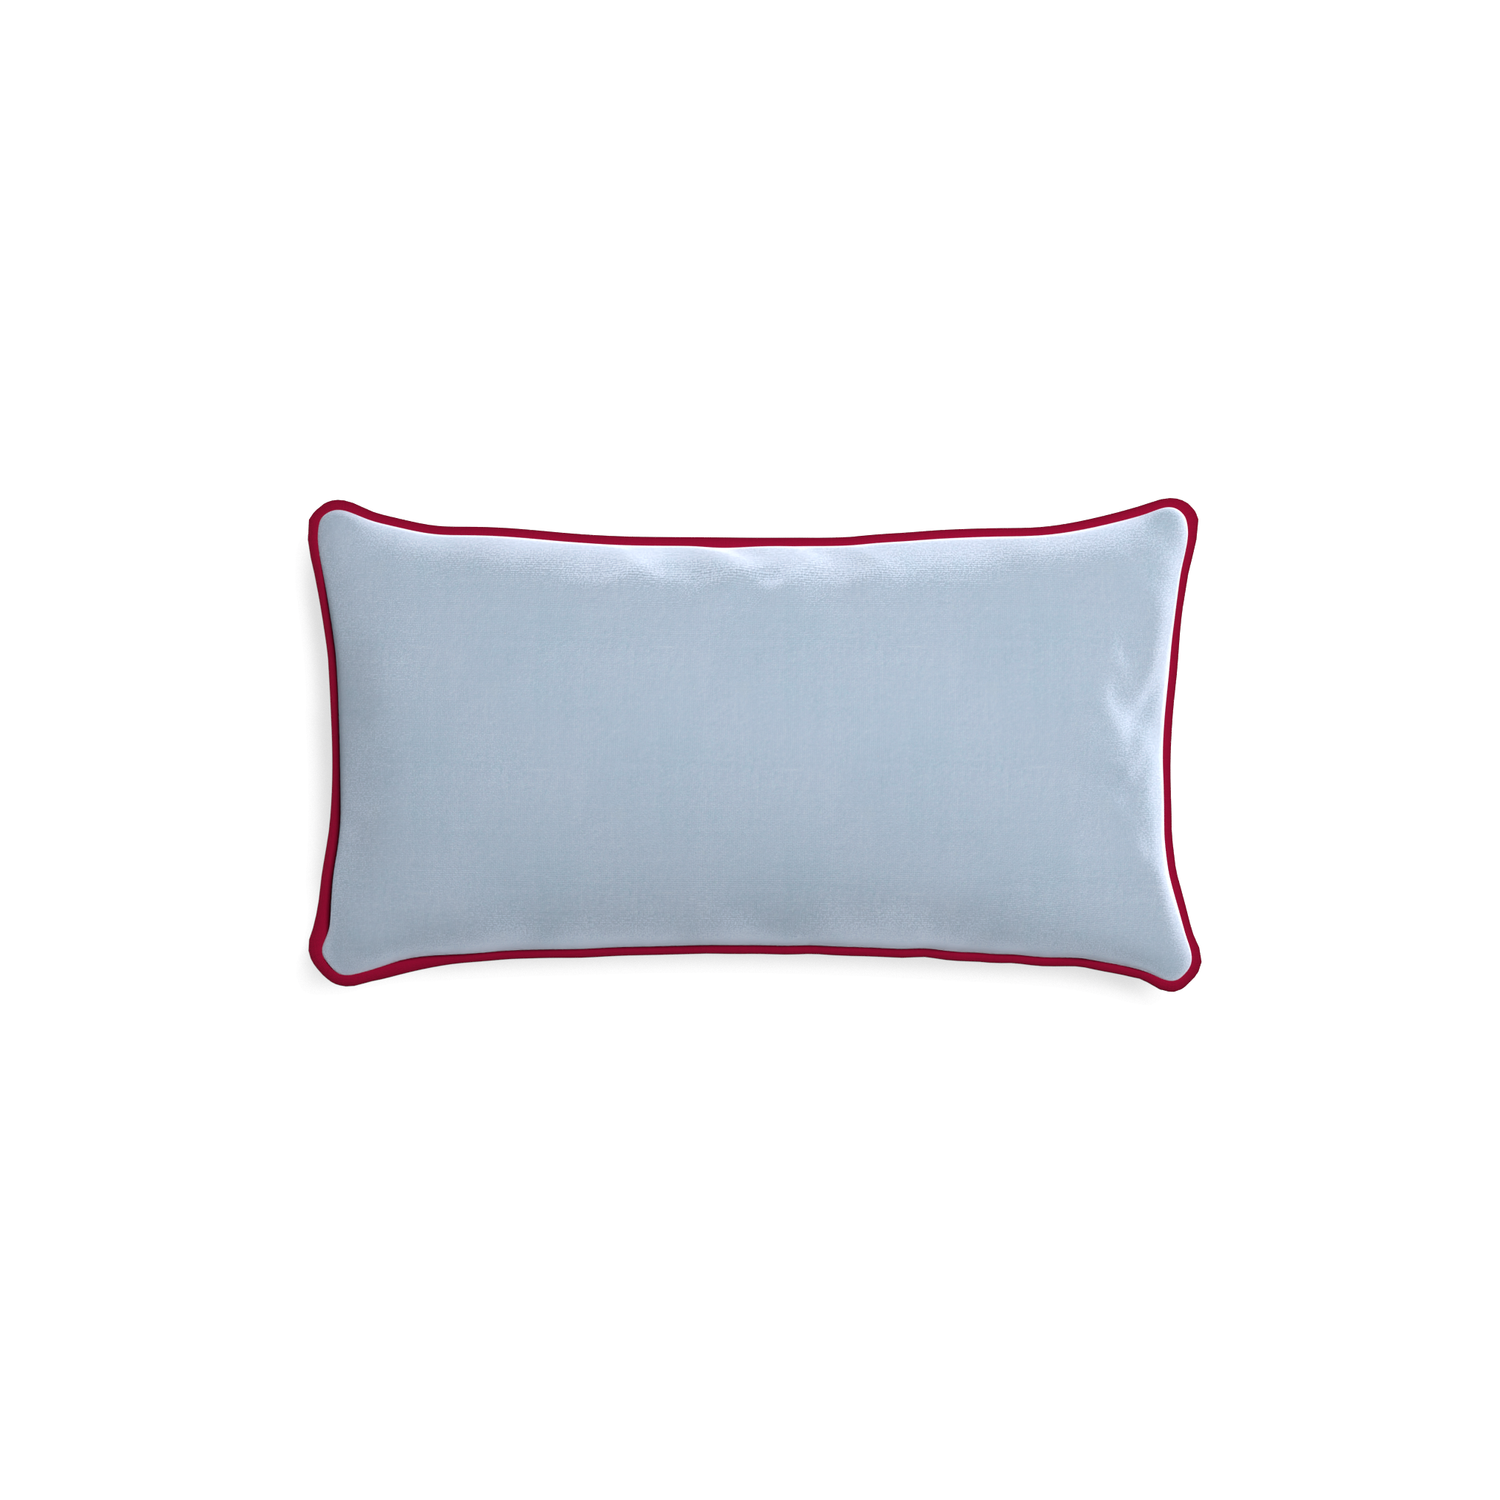 rectangle light blue velvet pillow with dark red piping